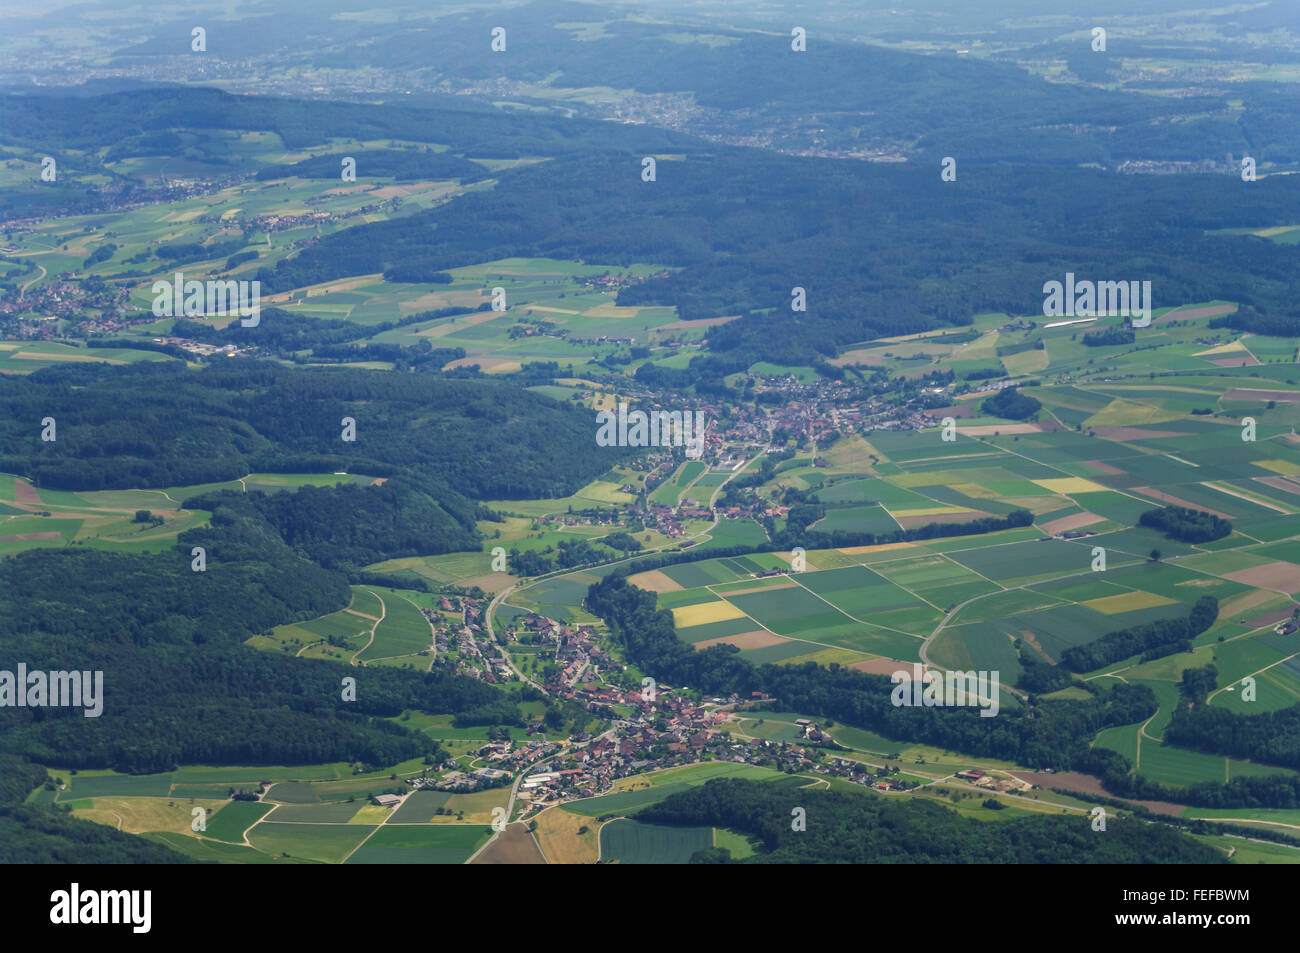 Fotografia aerea della valle Surbtal in Argovia, Svizzera, con i villaggi di Tegerfelden (anteriore) e Endingen (centro). Foto Stock